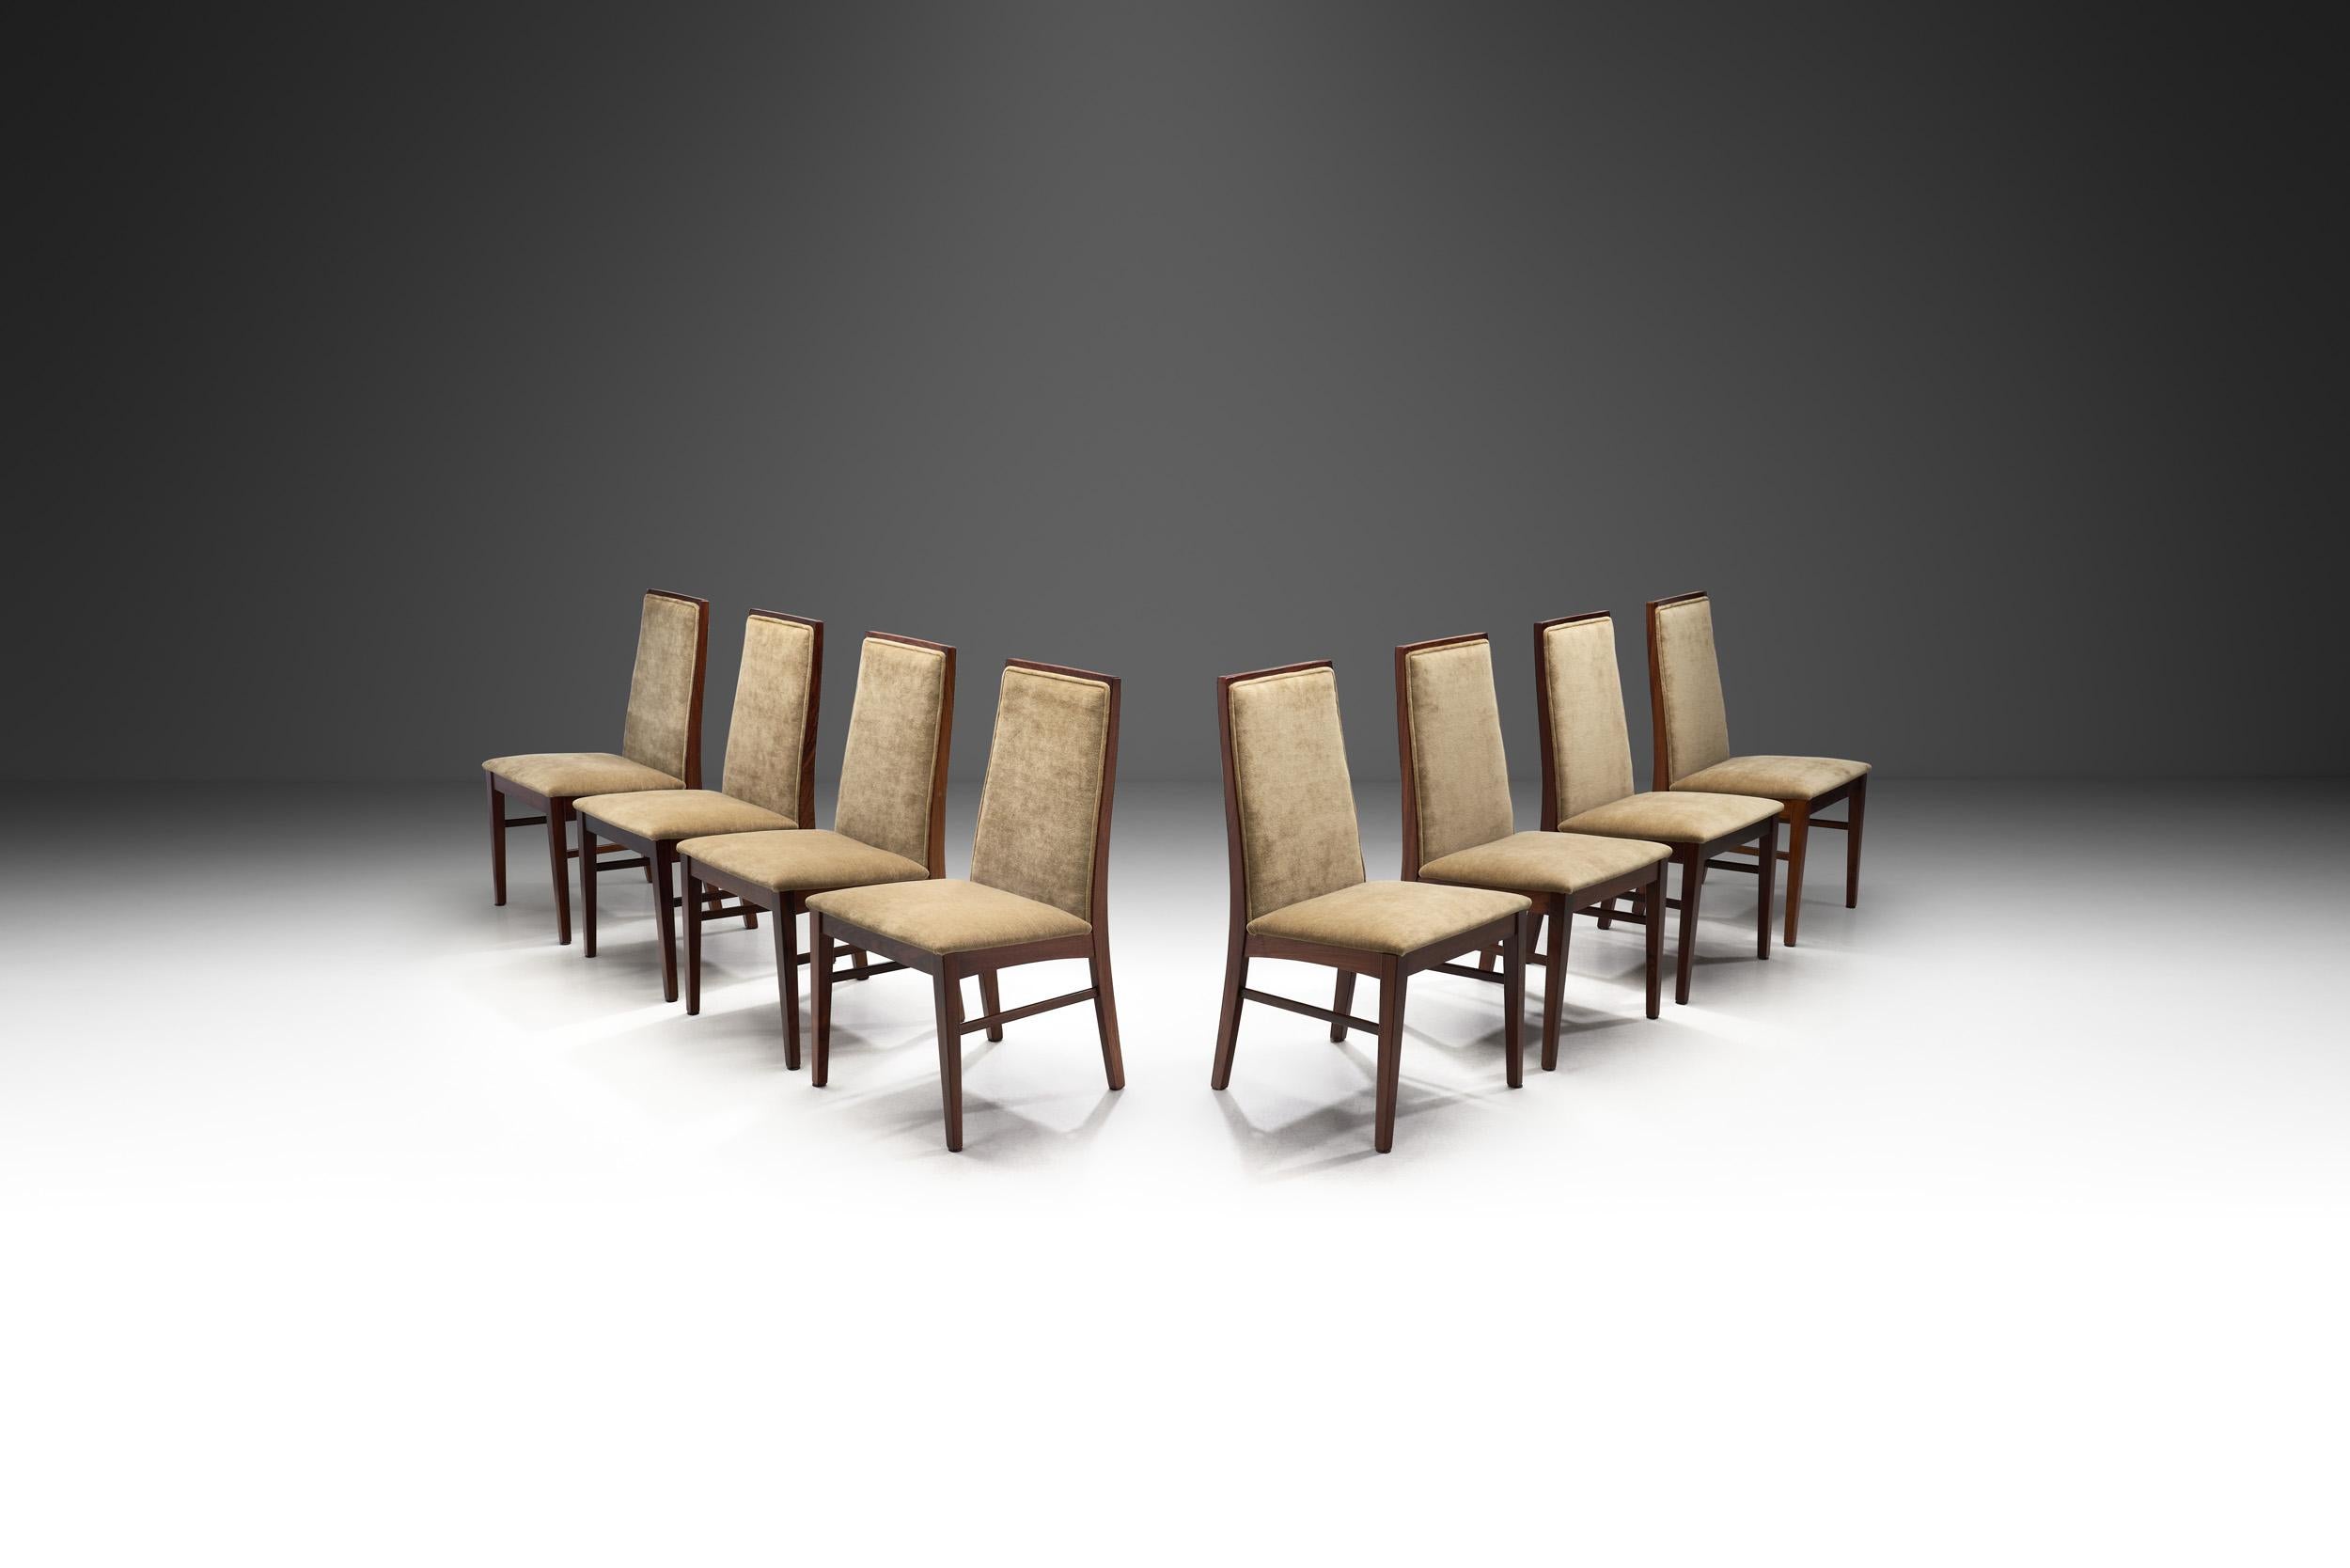 Dyrlund, ein renommierter dänischer Möbelhersteller, der 1960 gegründet wurde, hat die moderne Bewegung der Jahrhundertmitte mit tadelloser Liebe zum Detail und zeitlosem Design entscheidend mitgeprägt. Dieser Satz von acht Esszimmerstühlen des